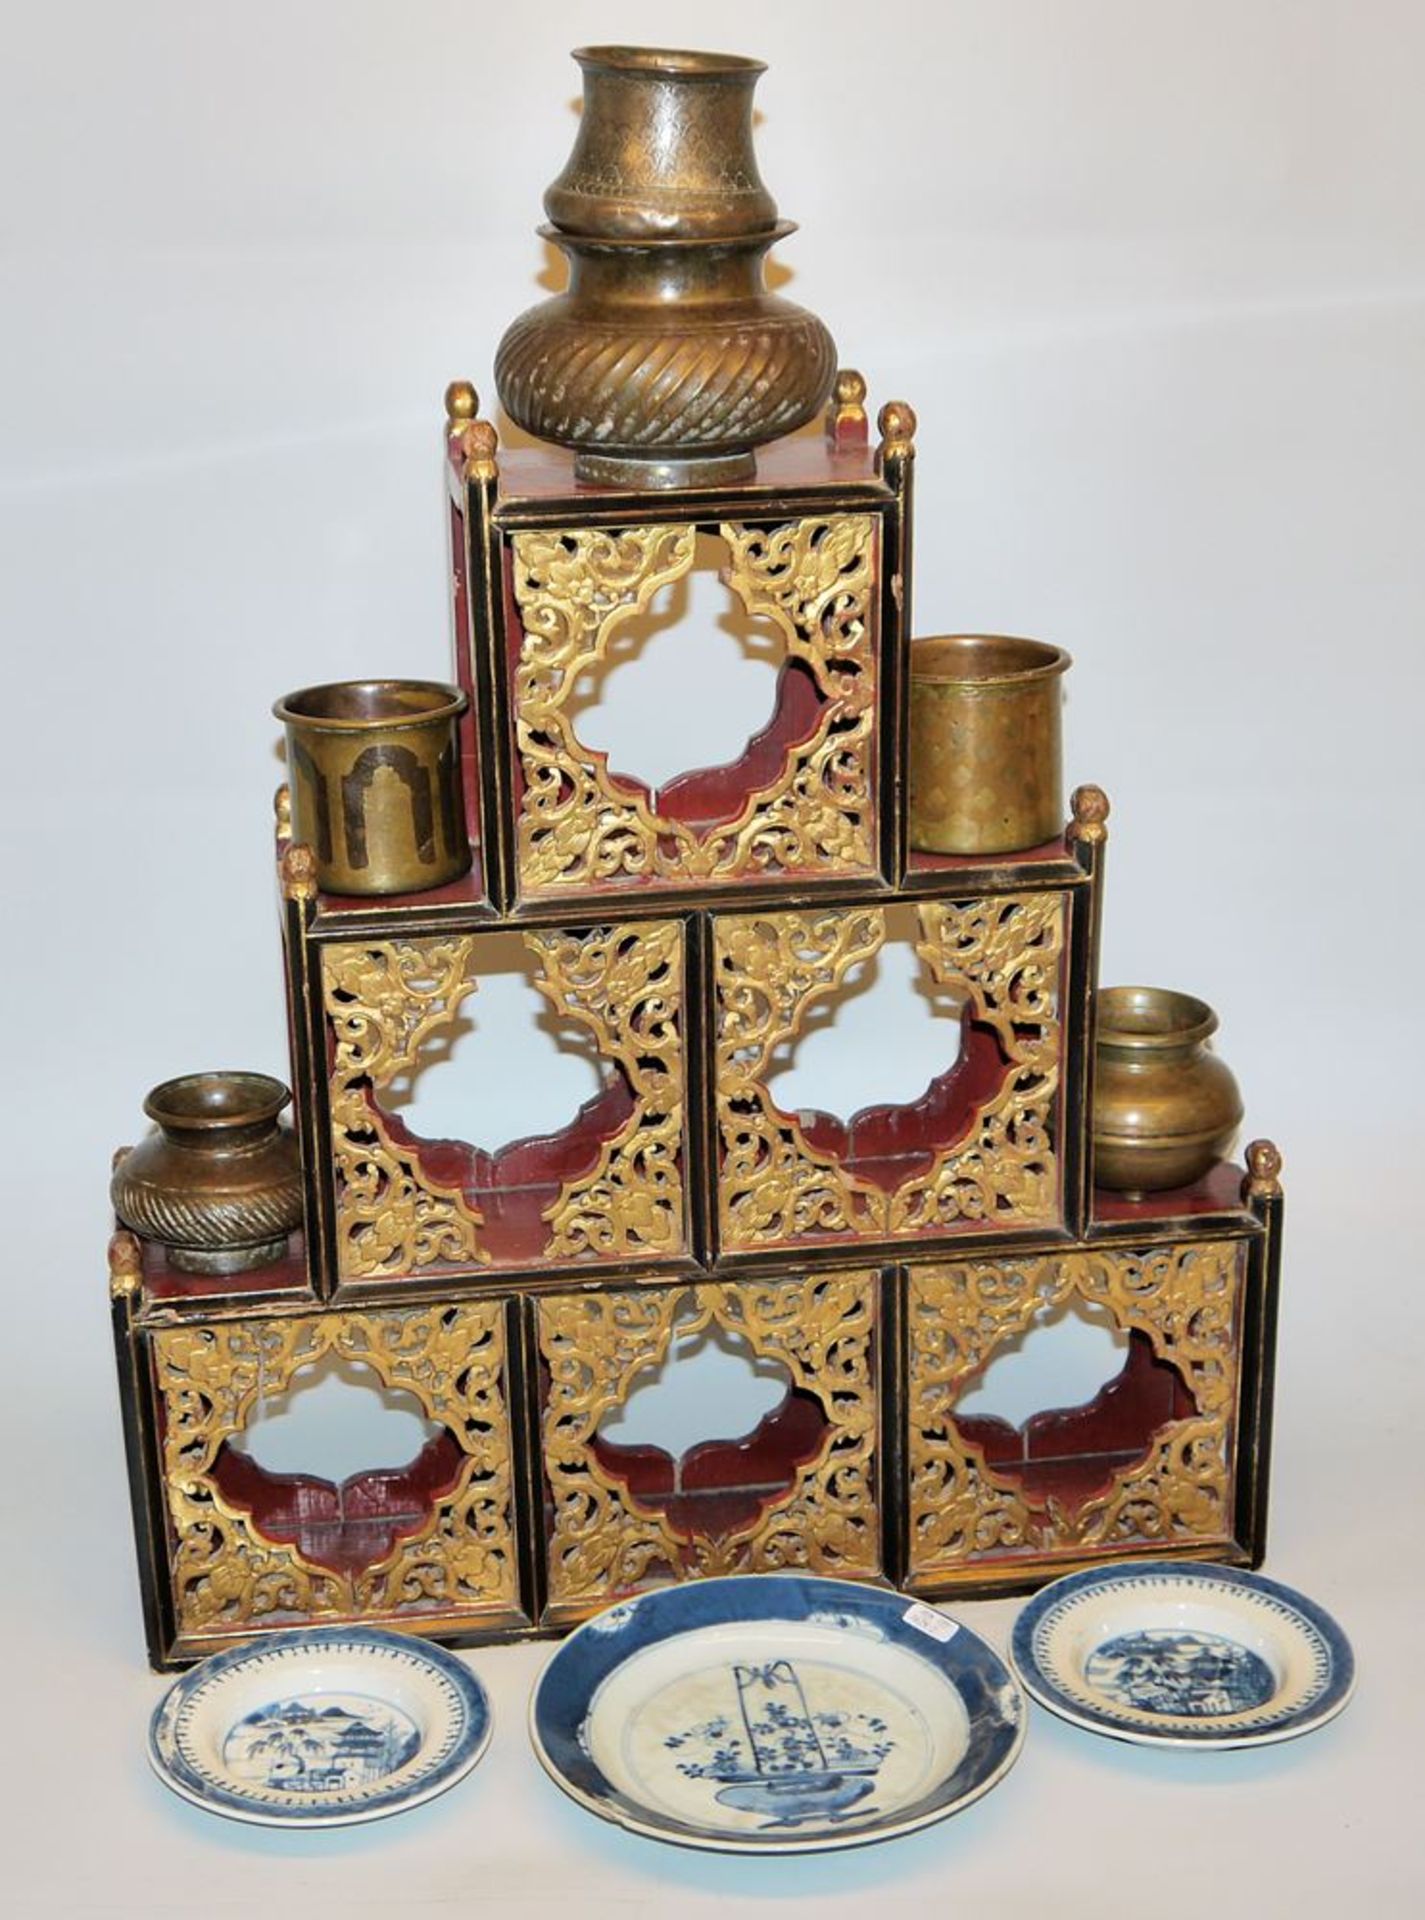 Chinesisches Tischregal, drei Porzellanteller und sechs indische Wassergefäße aus Messingbronze